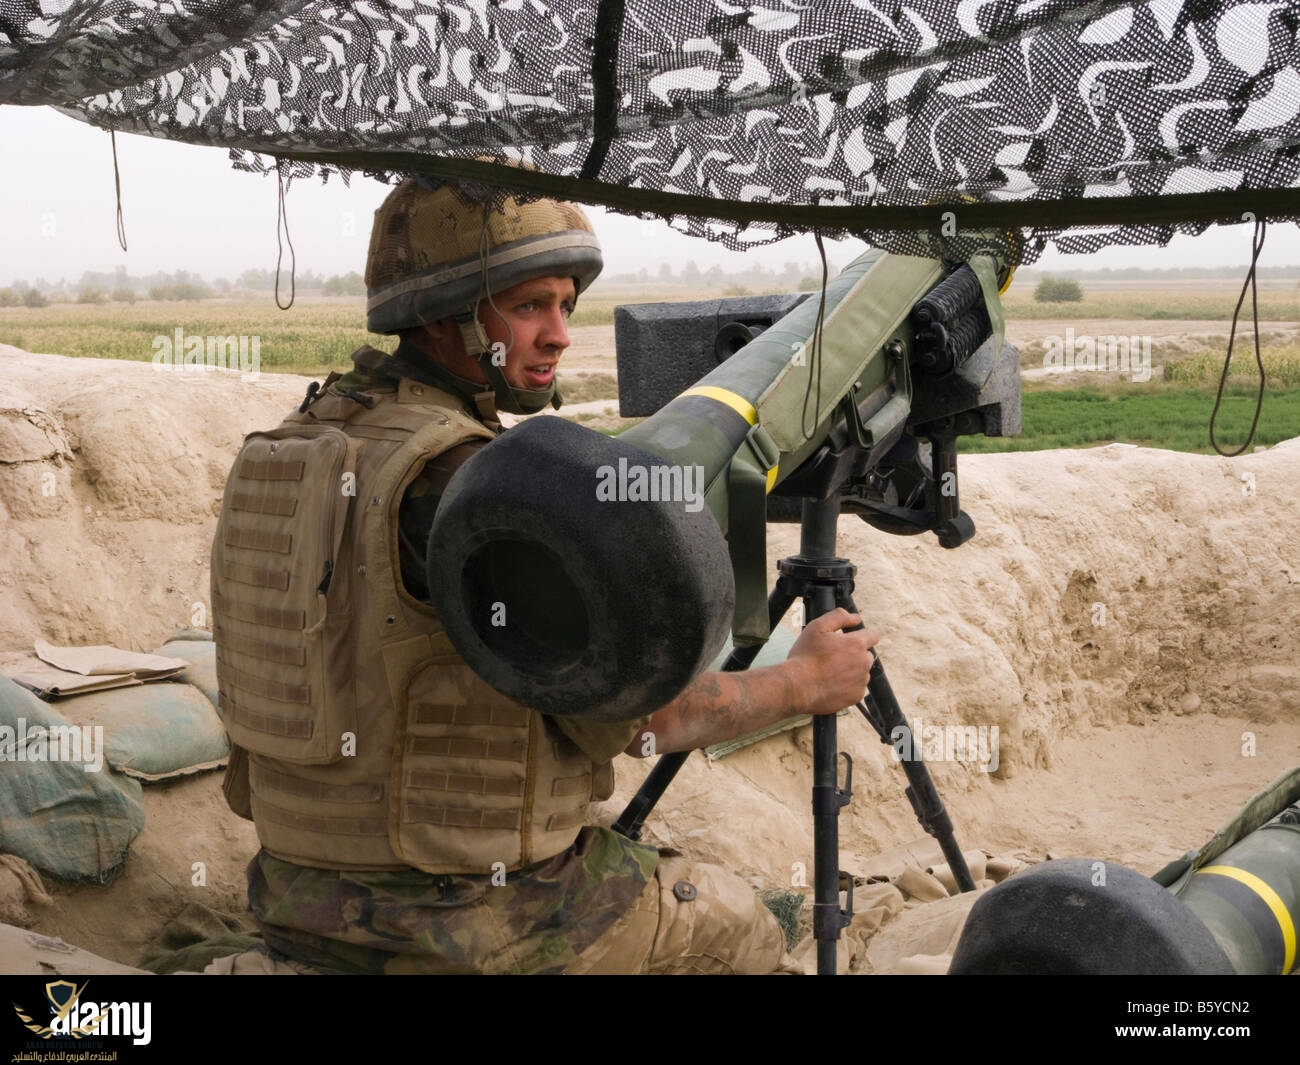 helmand-province-afghanistan-british-soldier-wearing-helmet-and-body-B5YCN2.jpg